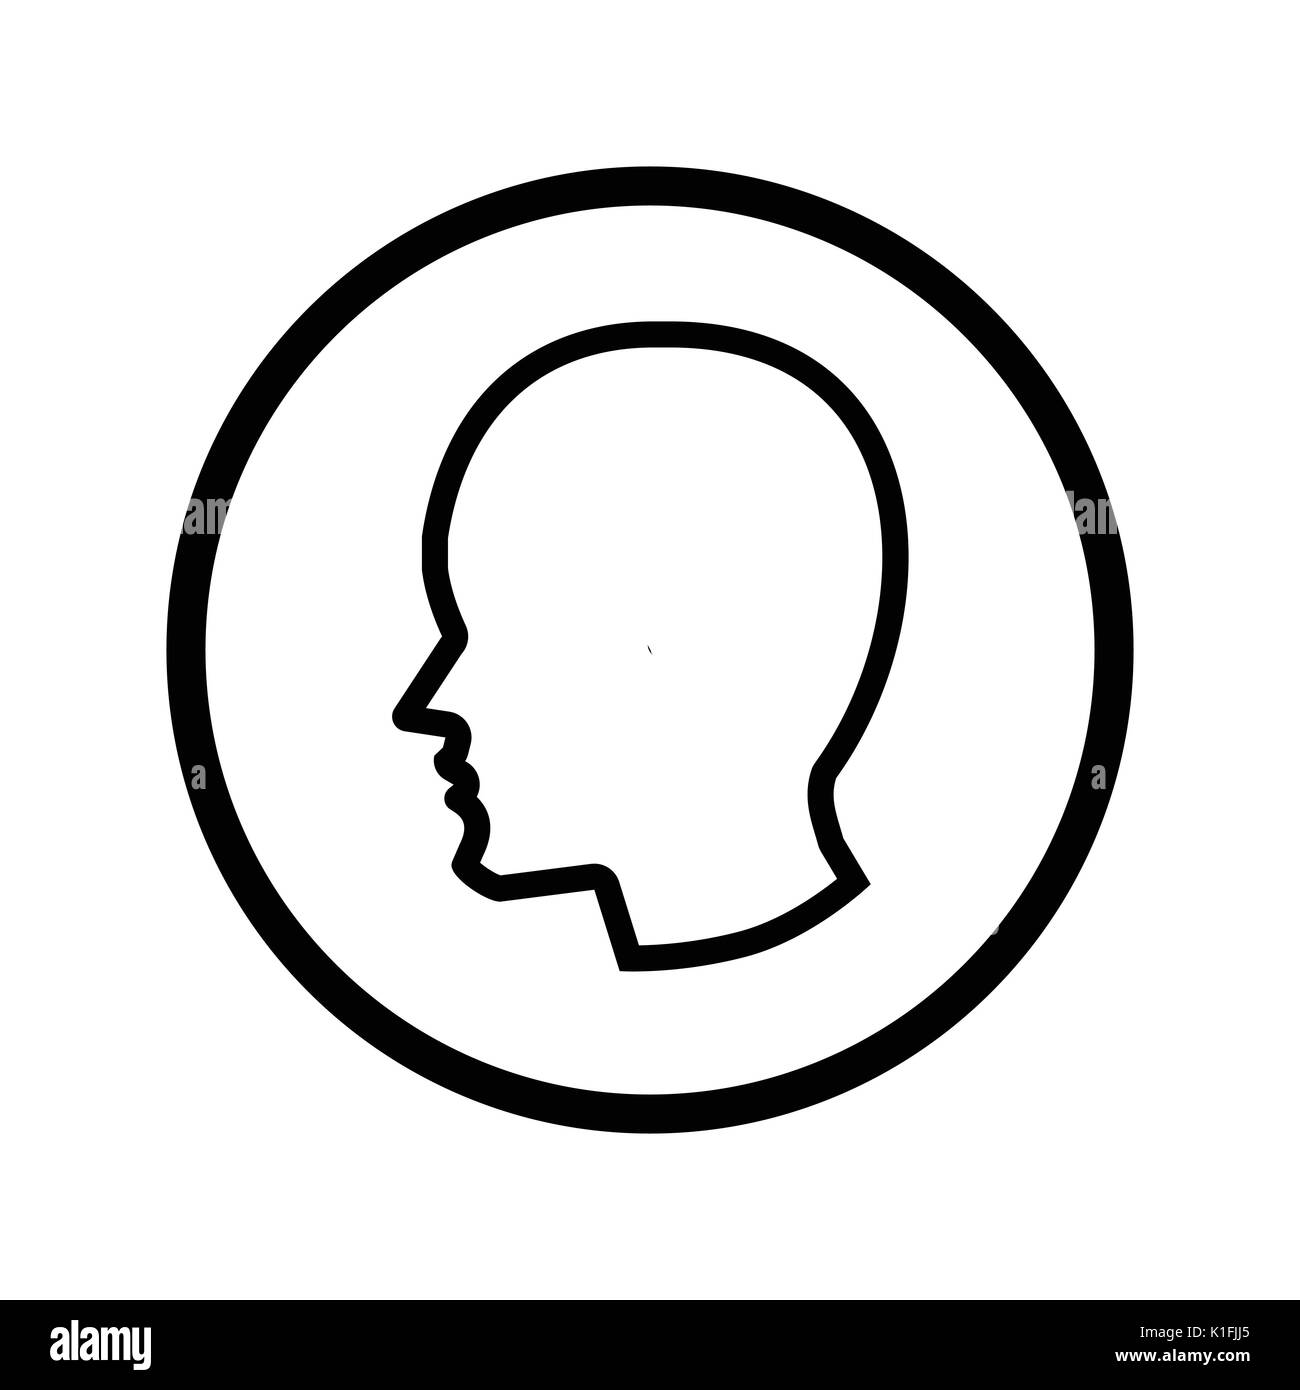 Testa maschio icona simbolo iconico all'interno di un cerchio sulla trasparenza griglia. Vettore design iconico. Illustrazione Vettoriale